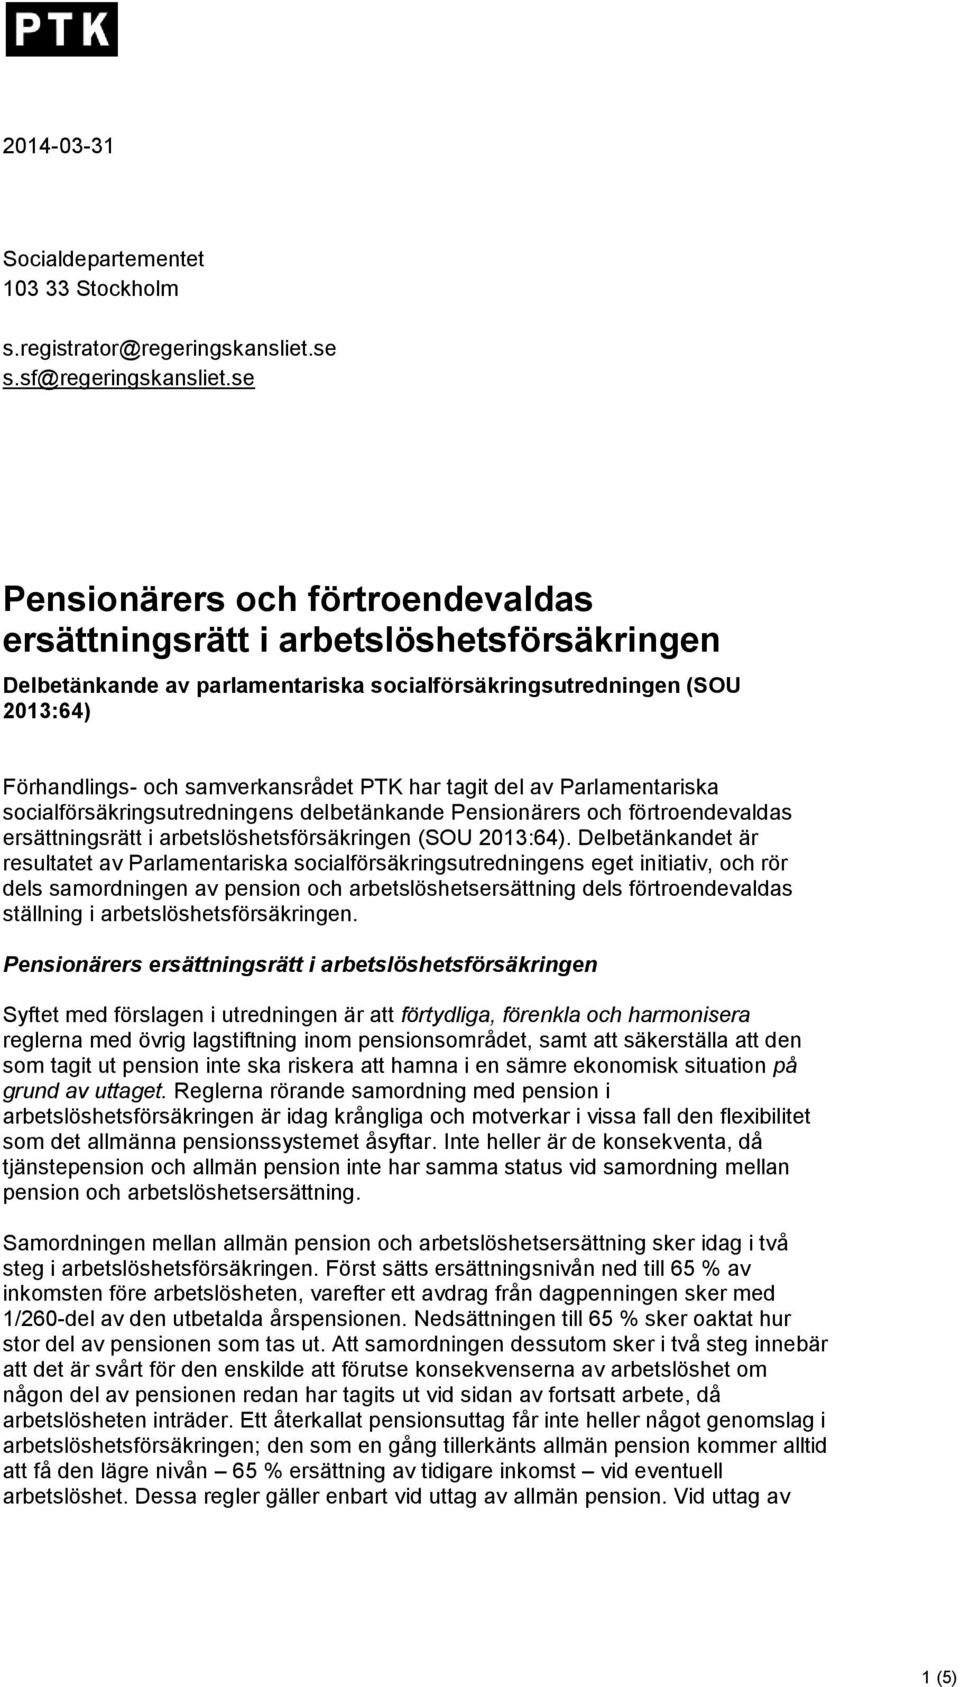 tagit del av Parlamentariska socialförsäkringsutredningens delbetänkande Pensionärers och förtroendevaldas ersättningsrätt i arbetslöshetsförsäkringen (SOU 2013:64).